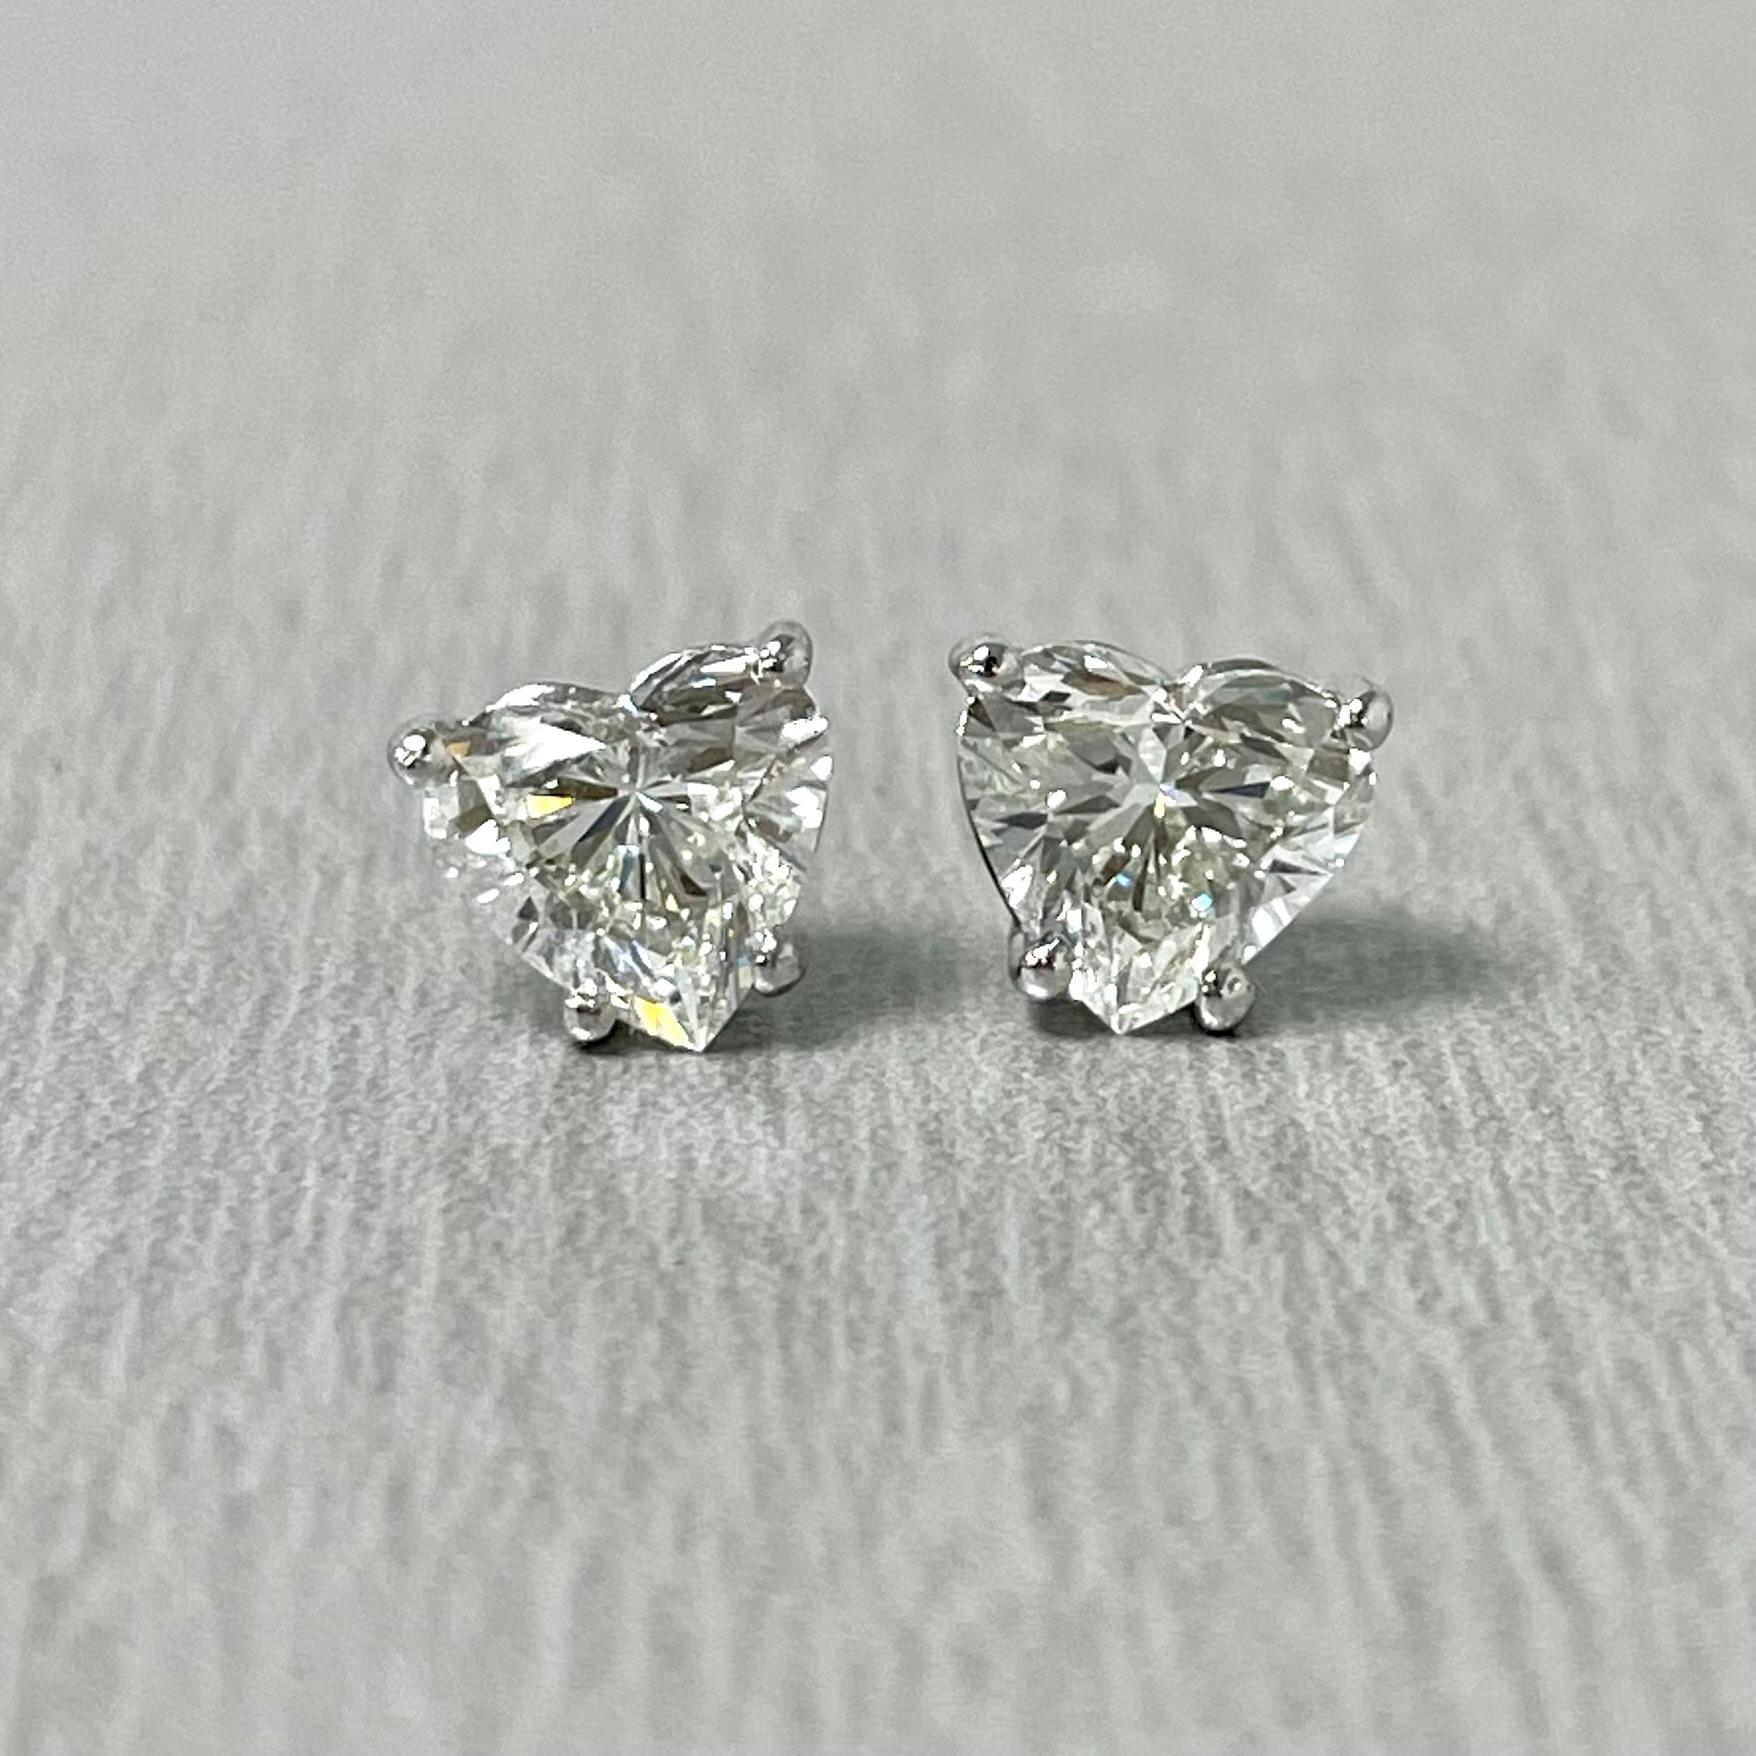 Solitär-Diamantohrstecker sind ein typisches Alltagsschmuckstück. Sie sind ein Klassiker und ein Statement zugleich. 

Dieses besondere Paar herzförmiger Ohrstecker weist eine Tiefe von 58,3 % und 57,1 % auf, wodurch es eher wie ein Paar